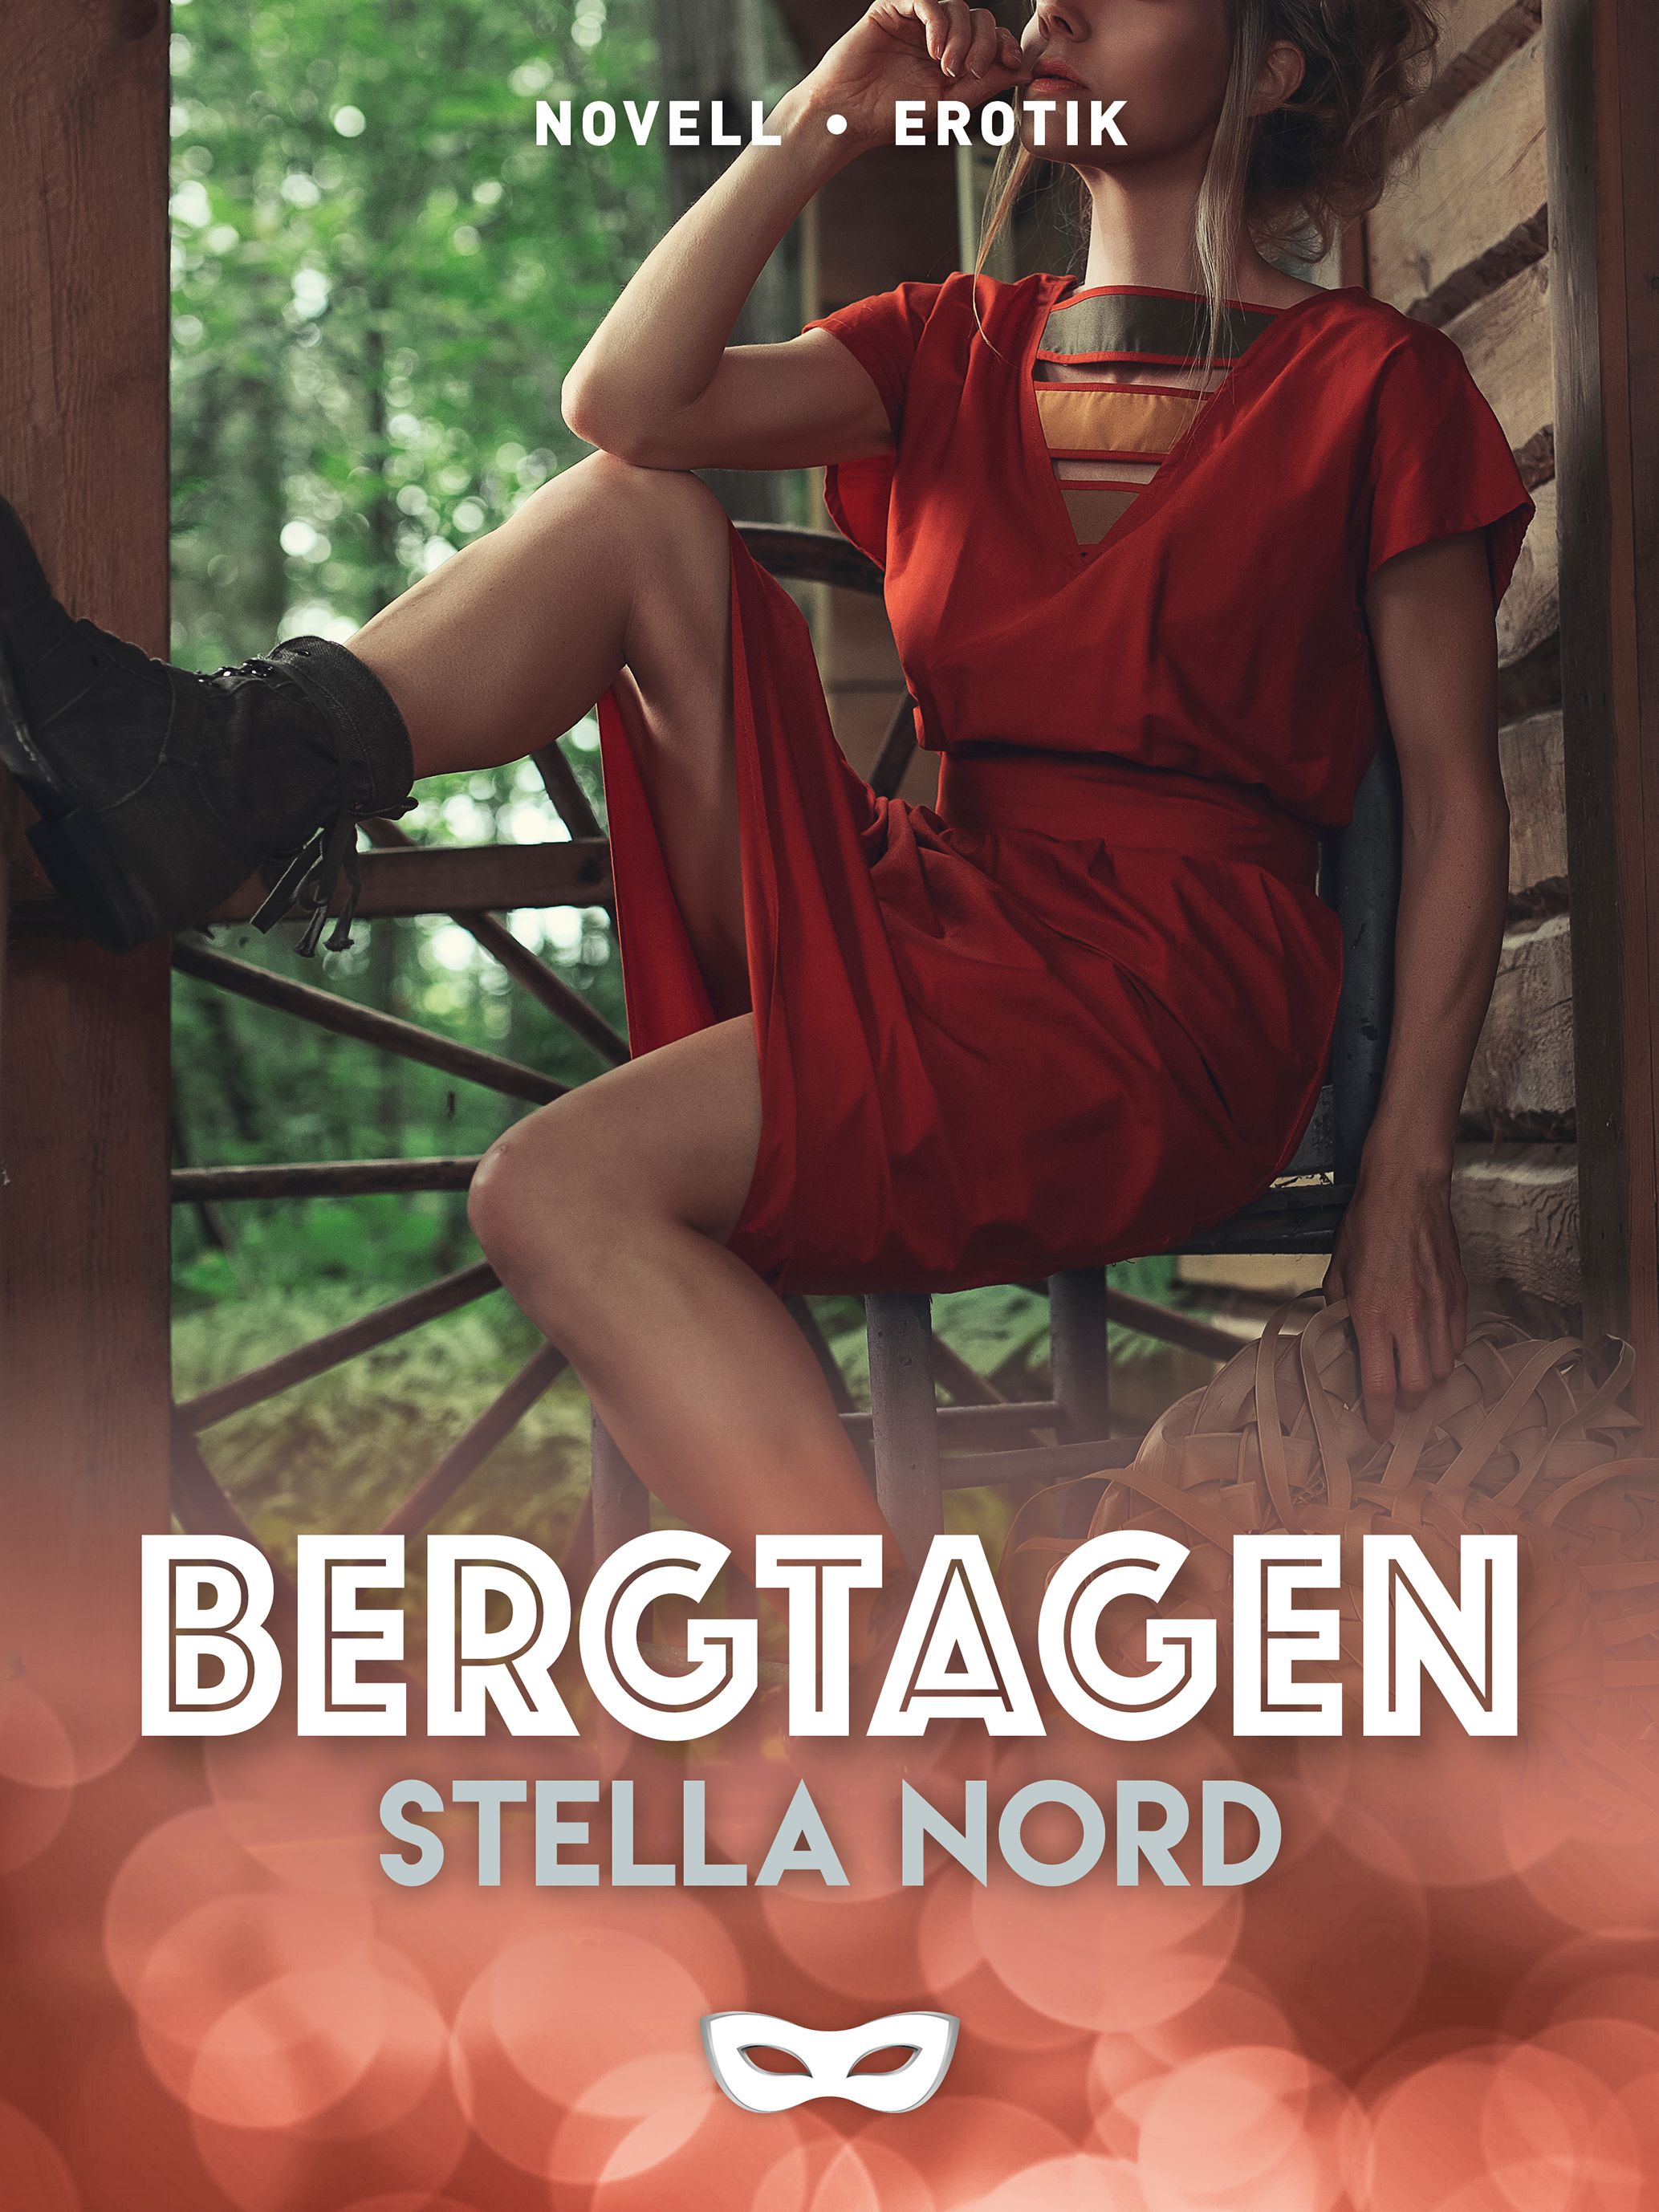 Bergtagen, e-bok av Stella Nord